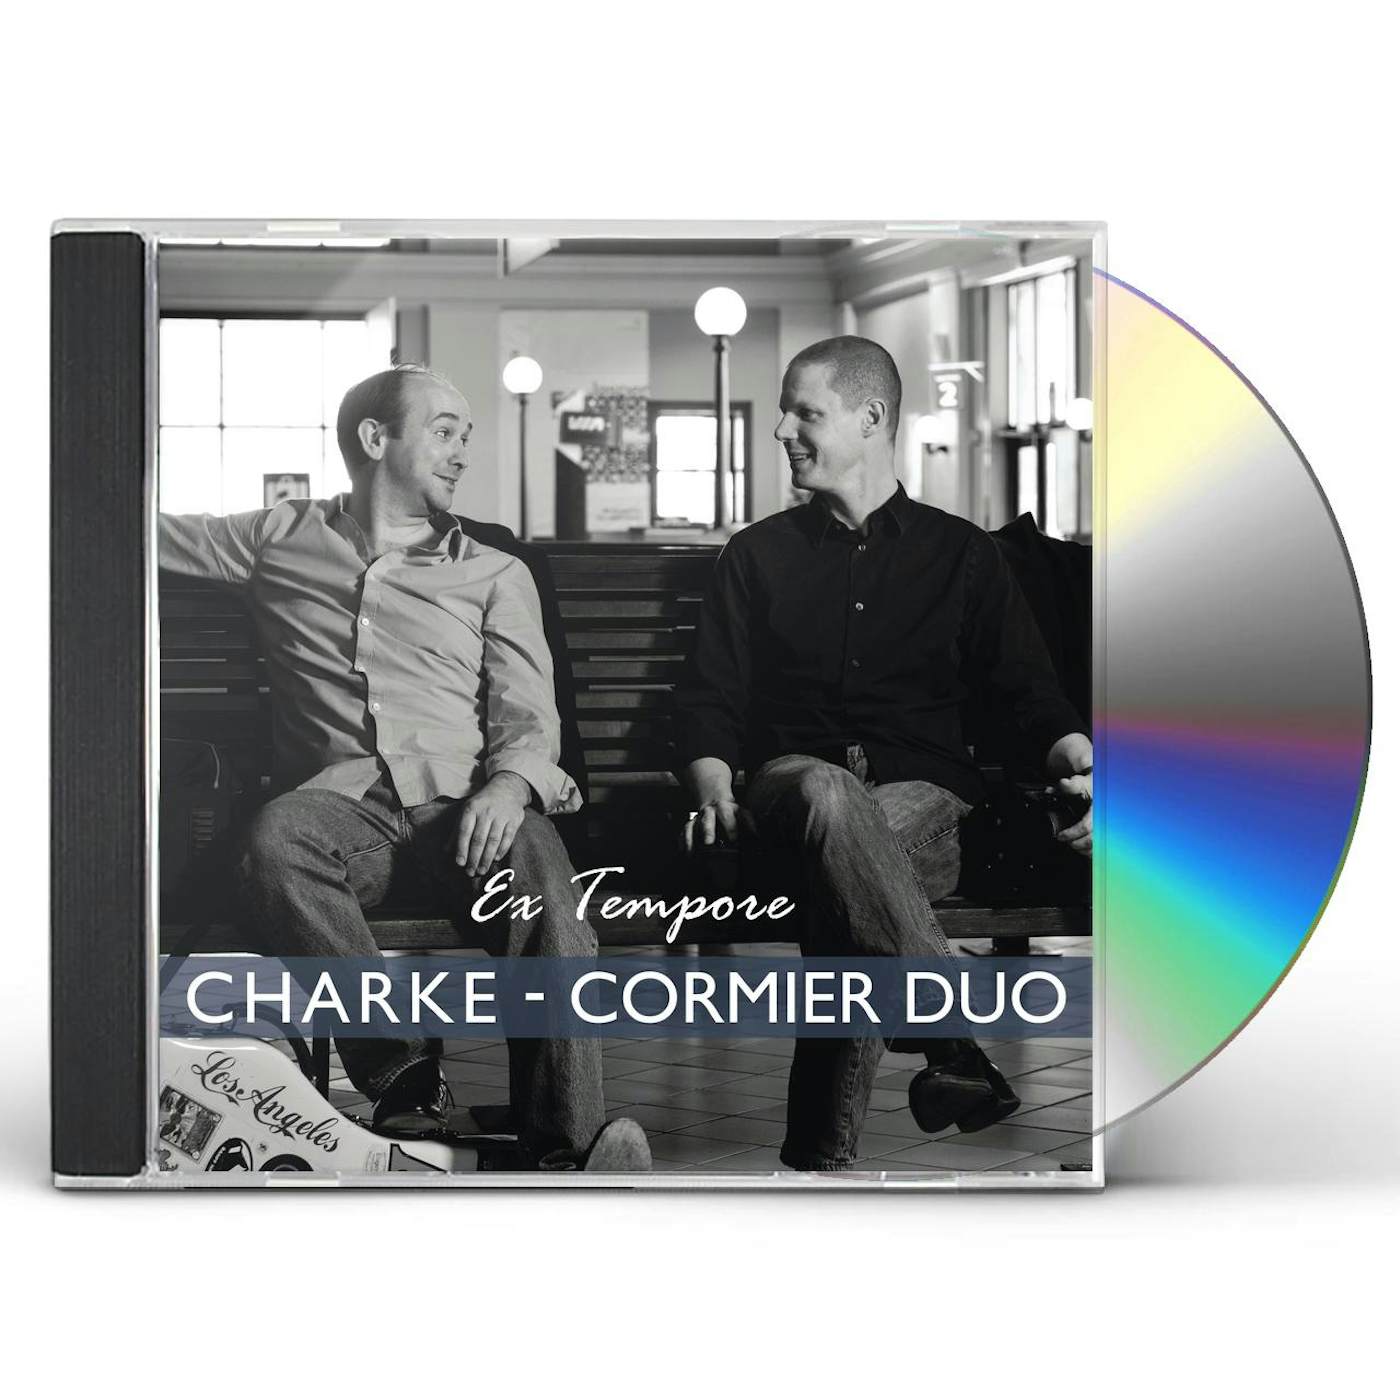 Scarlatti EX TEMPORE CD